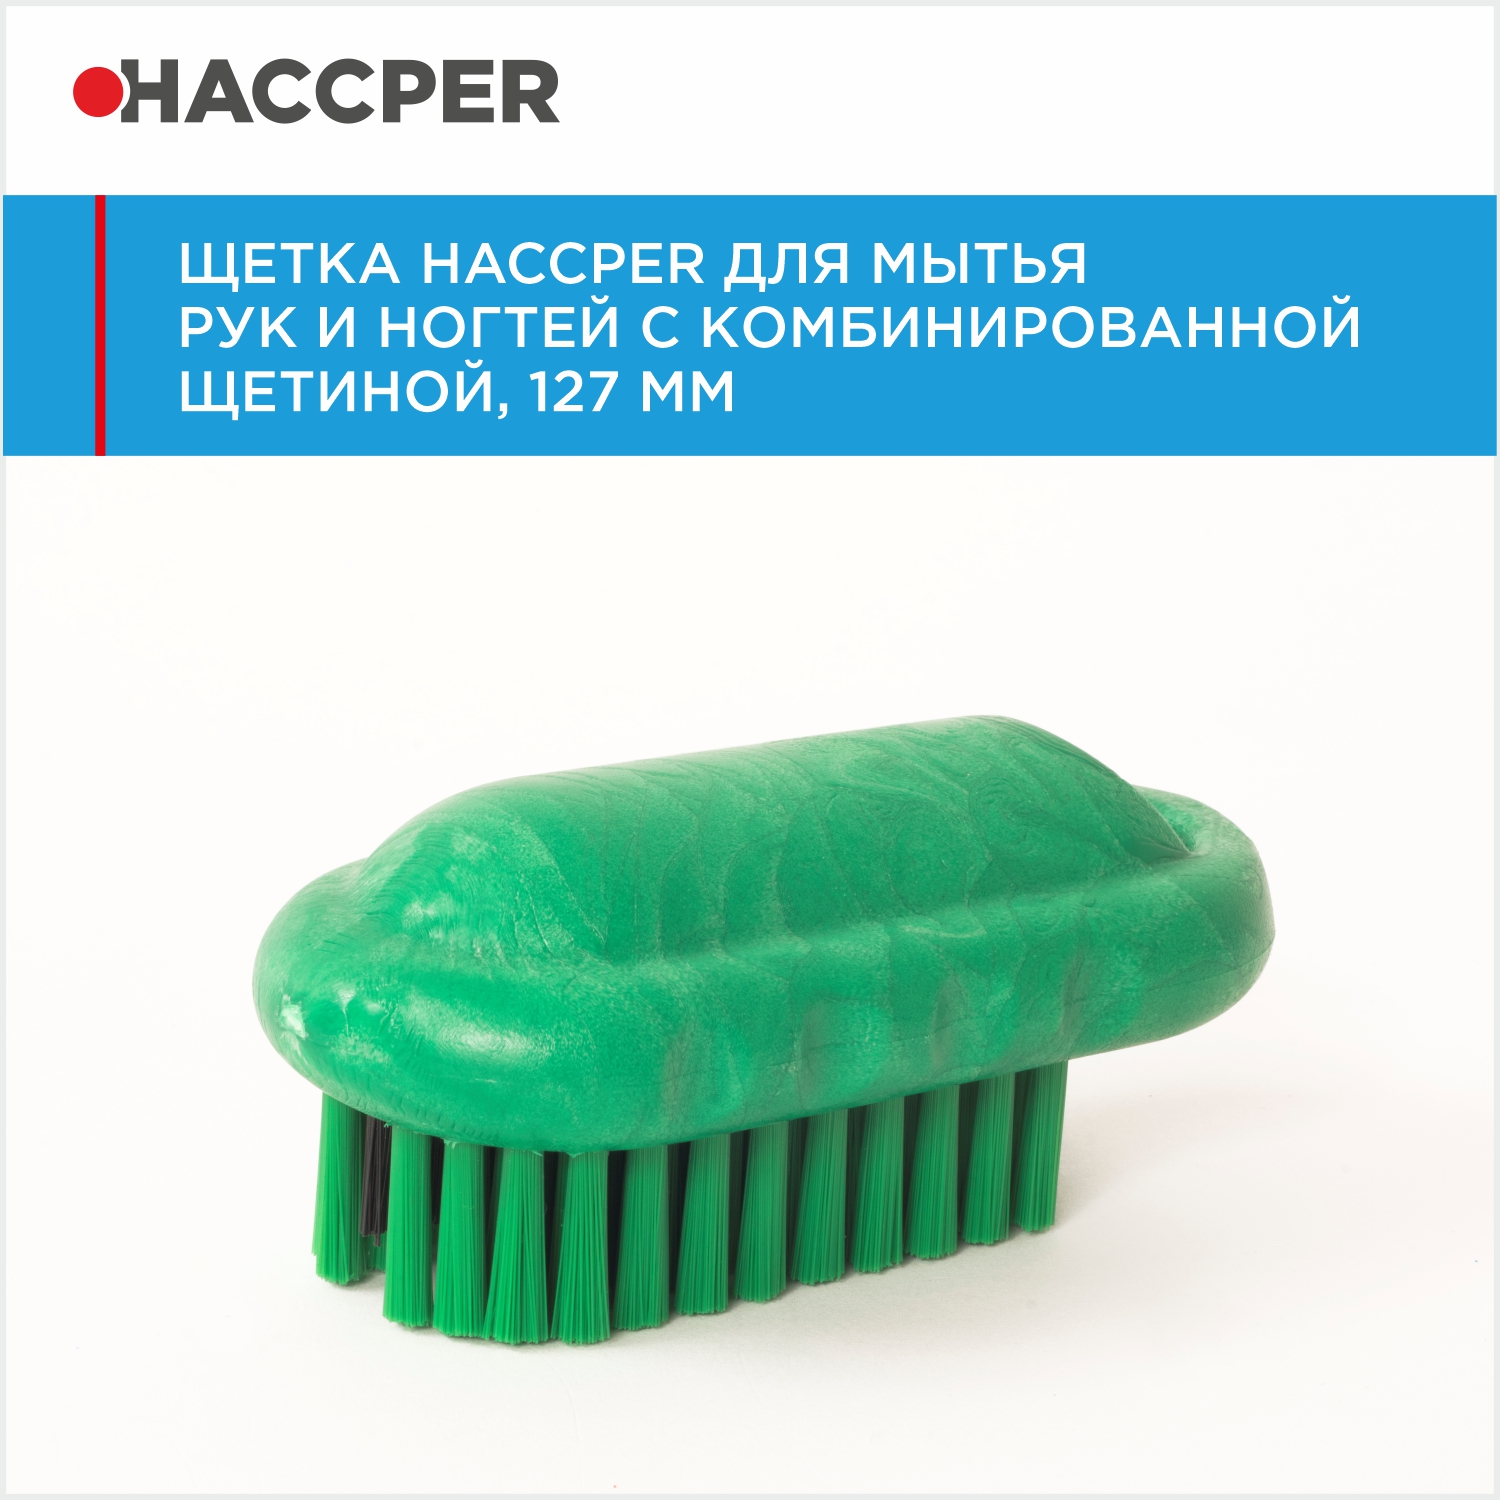 Щетка HACCPER для мытья рук и ногтей с комбинированной щетиной, 127 мм, зеленая